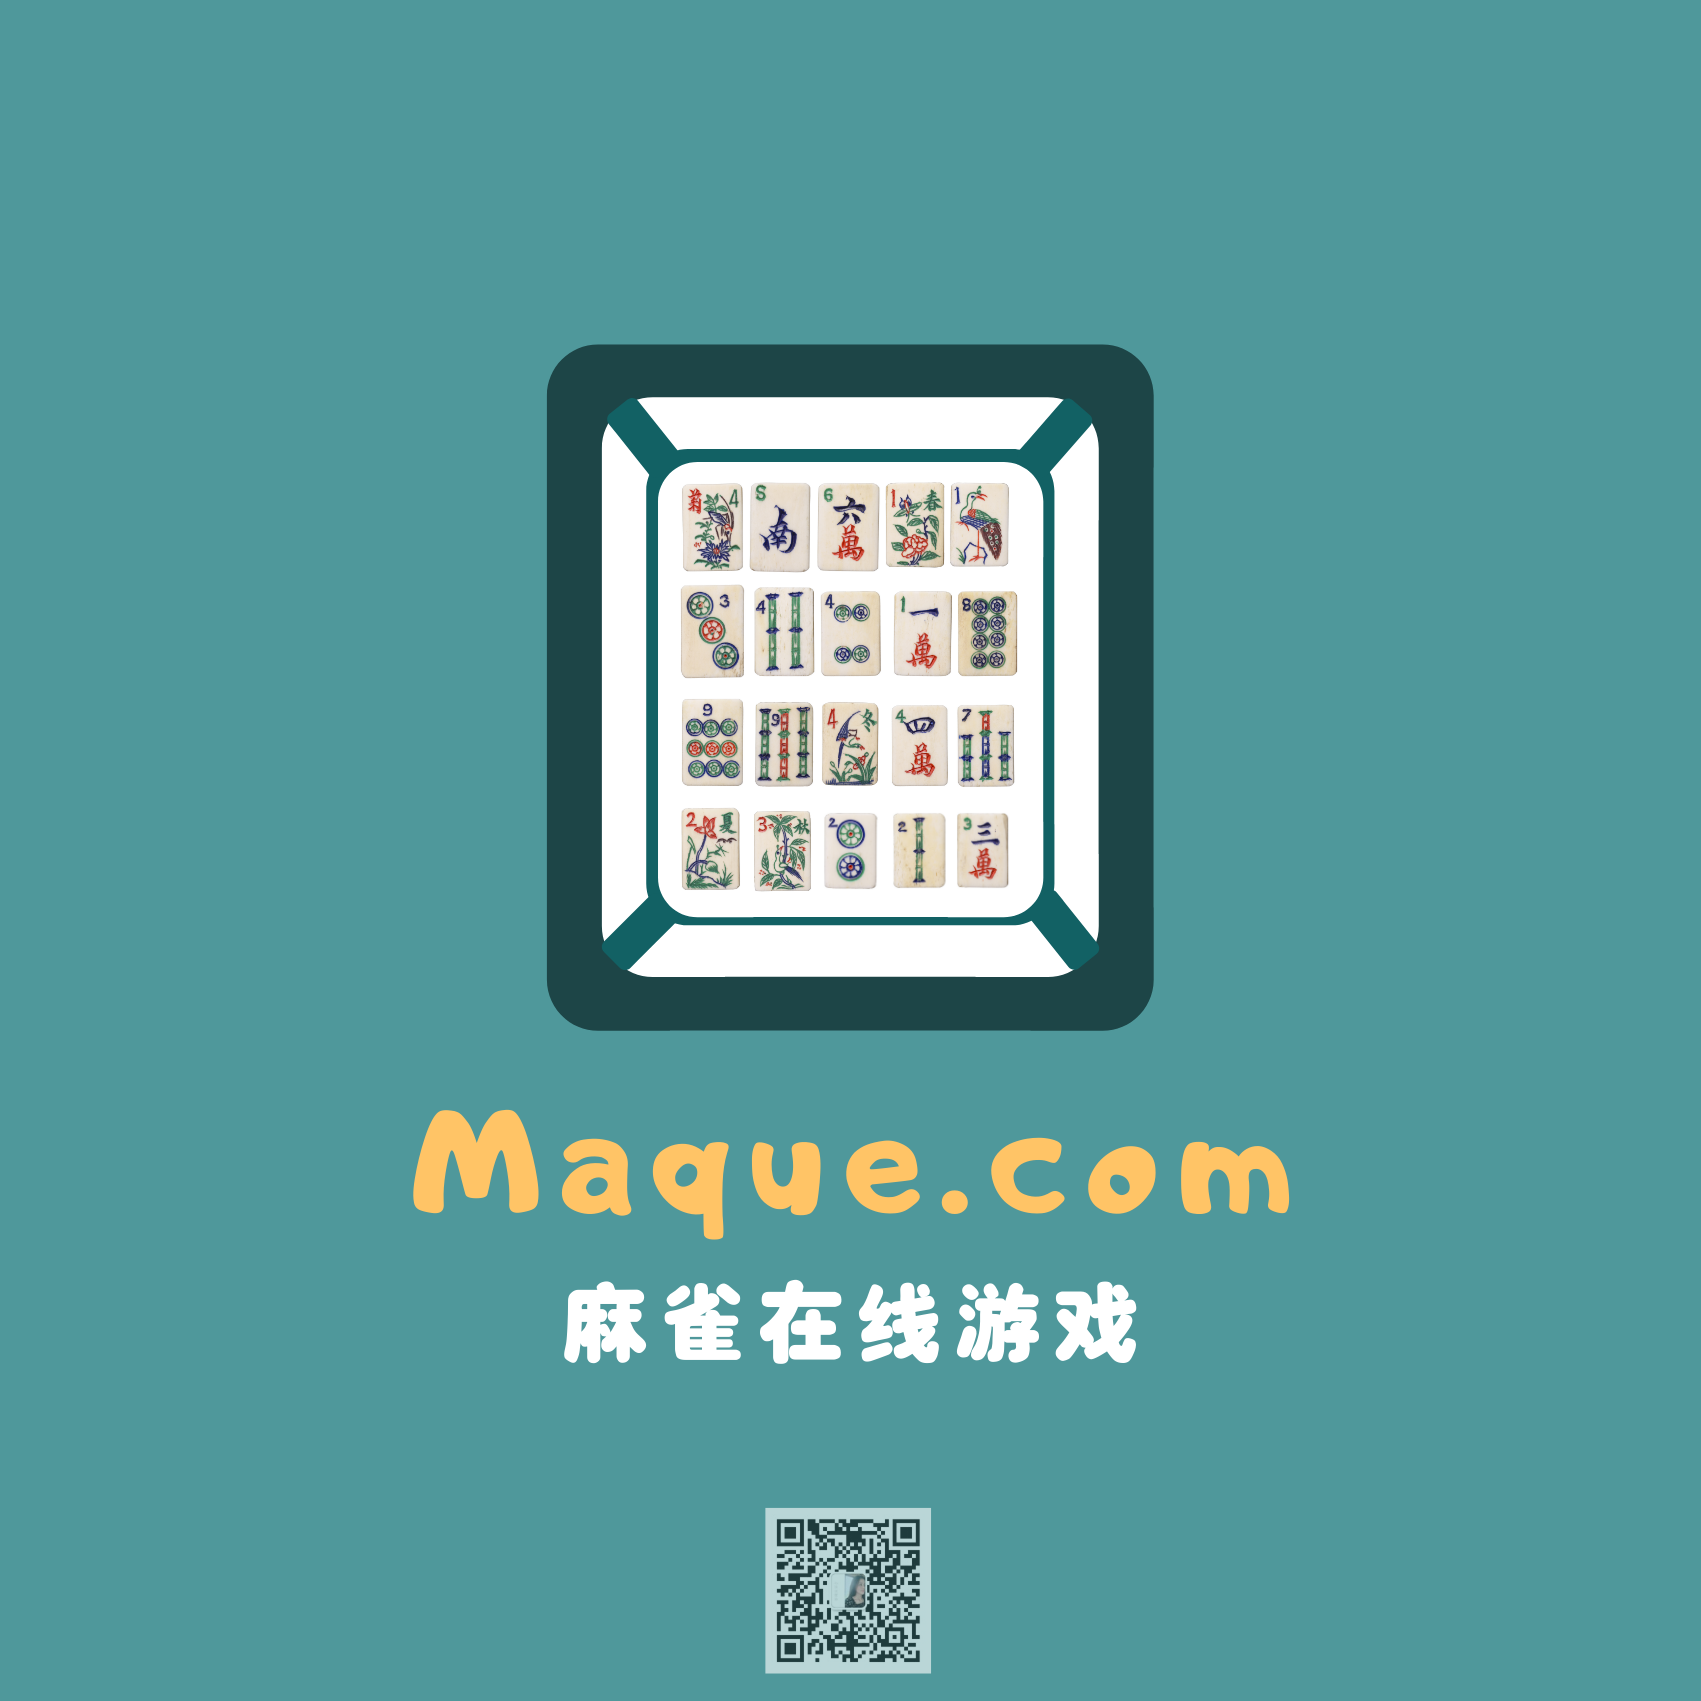 maque.com